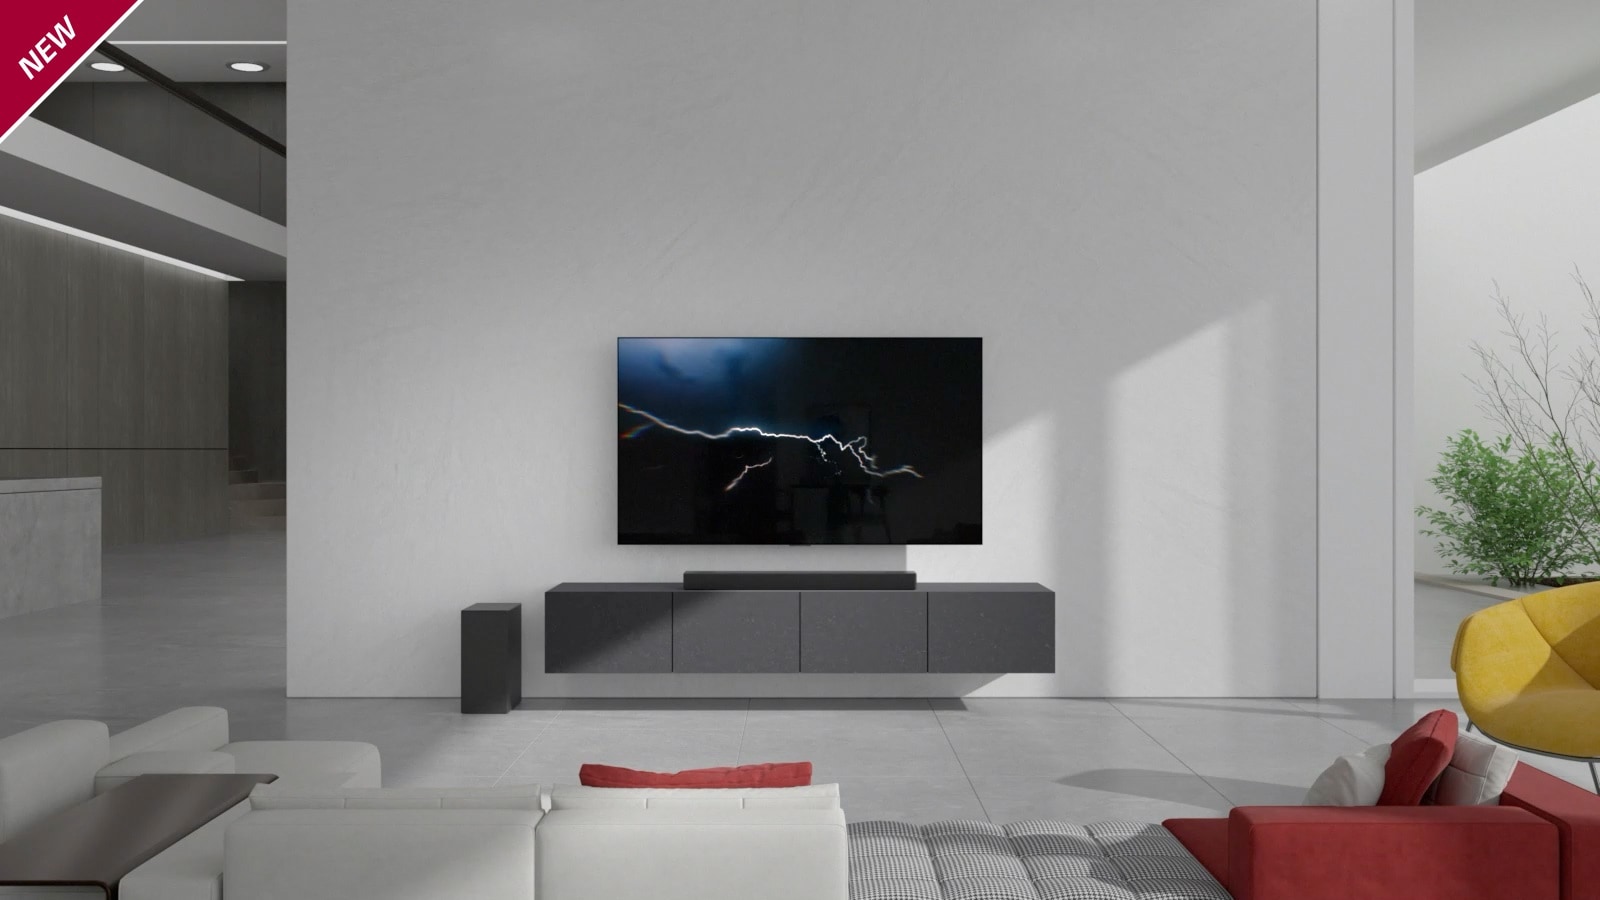 Soundbar je umístěn na šedém televizním stolku a televizor je namontován na stěně obývacího pokoje nad ním. Vlevo na podlaze je položen bezdrátový subwoofer a zprava do místnosti vniká sluneční světlo. Naproti televizoru LG a soundbaru se nachází pohovka v bílé a červené barvě. V levém horním rohu je umístěn nápis NOVINKA.